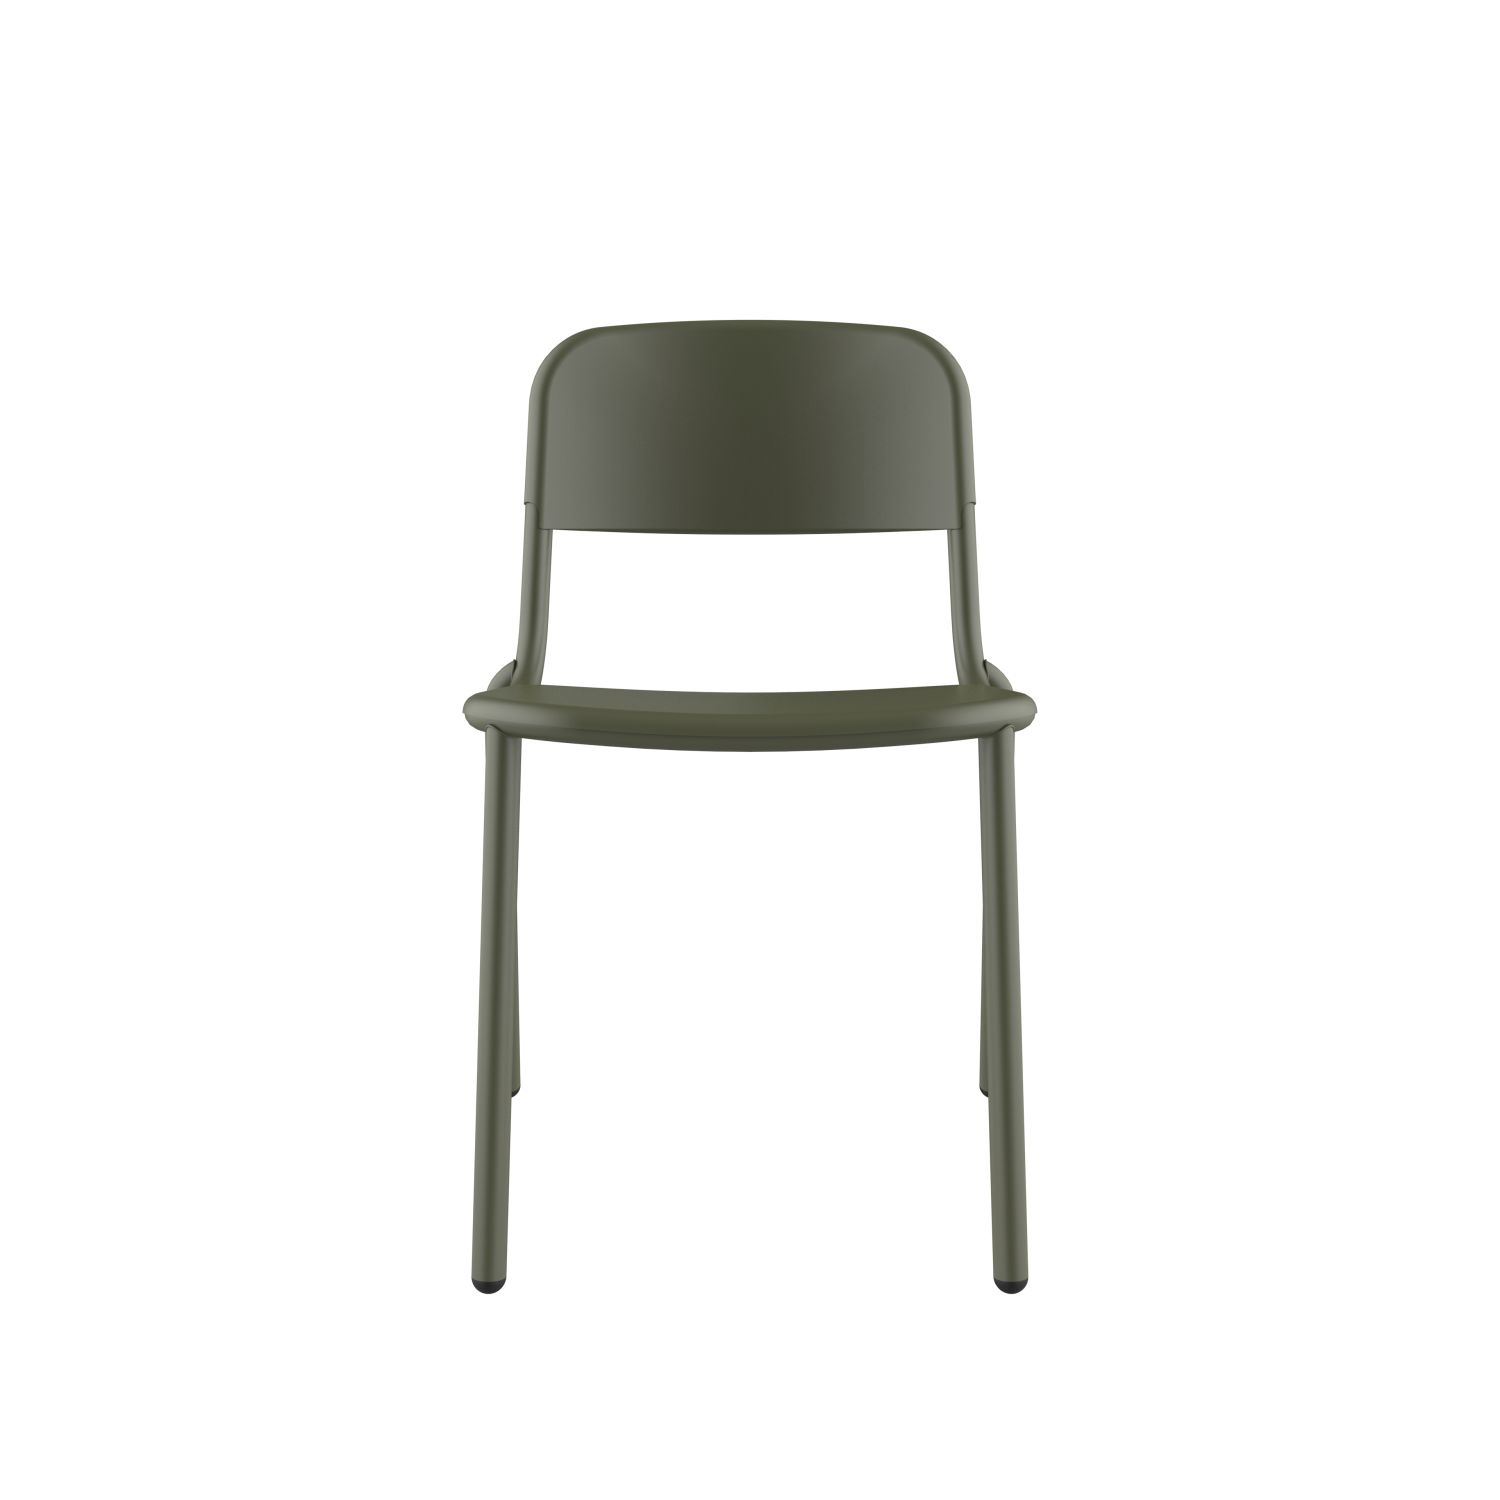 lensvelt studio stefan scholten loop chair stackable no armrests no perforation olive green ral6003